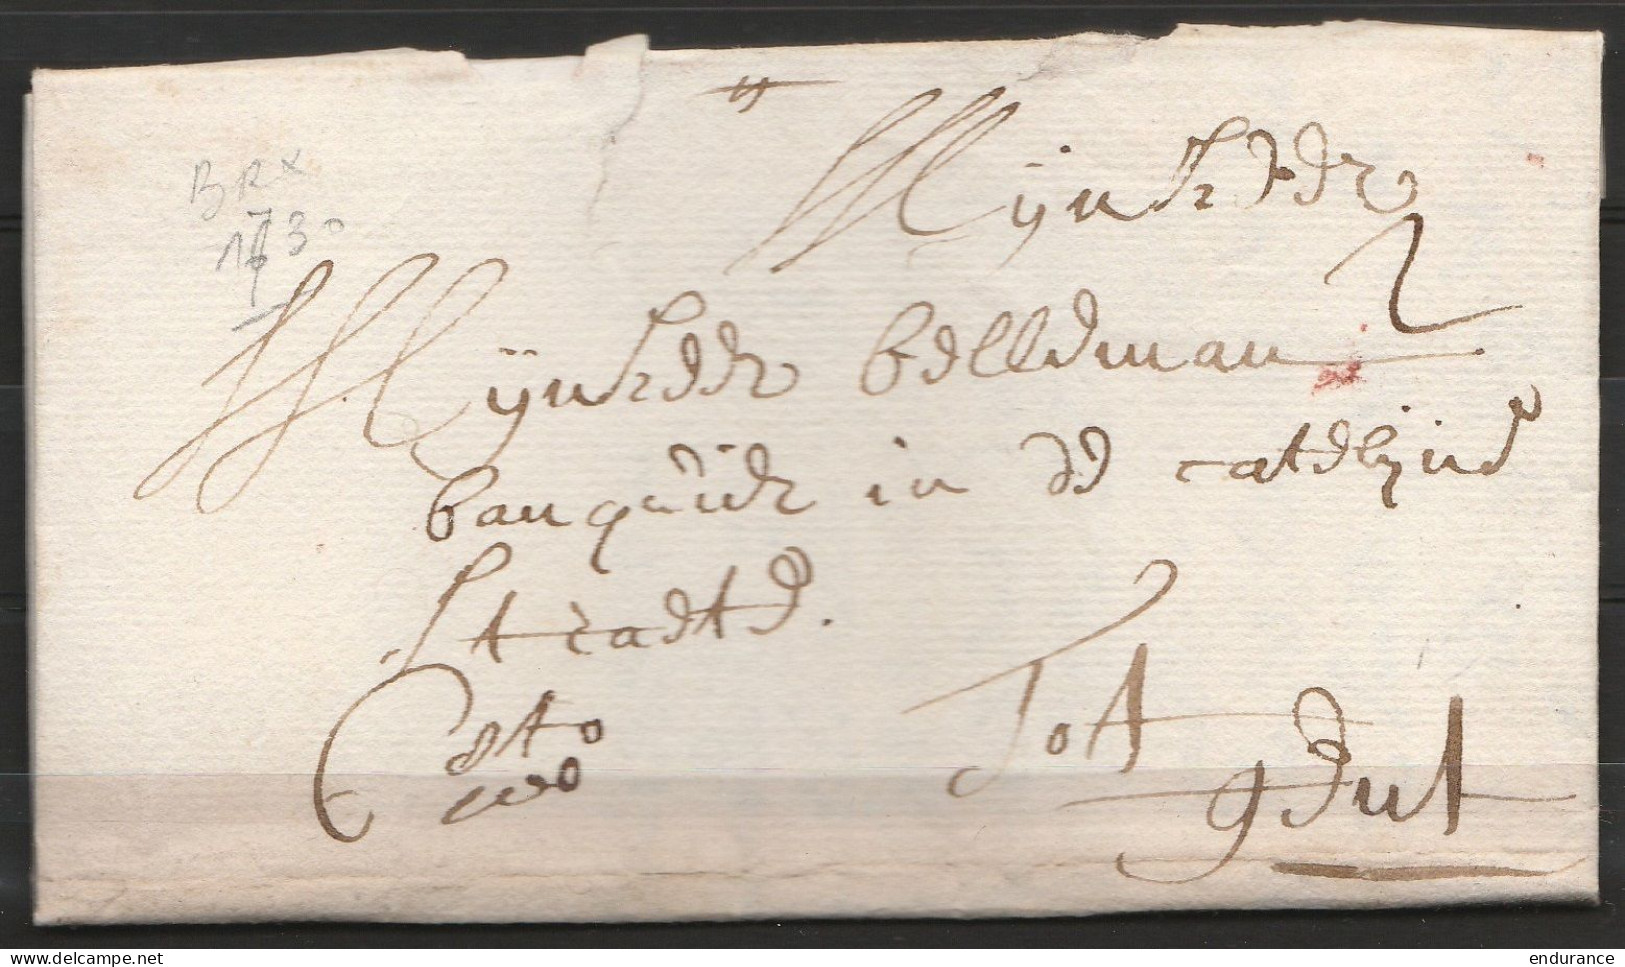 LAC Daté 1730 De BRUXELLES Pour Banquier à GENT Port 2 Manuscrit "cito Cito" - 1714-1794 (Pays-Bas Autrichiens)